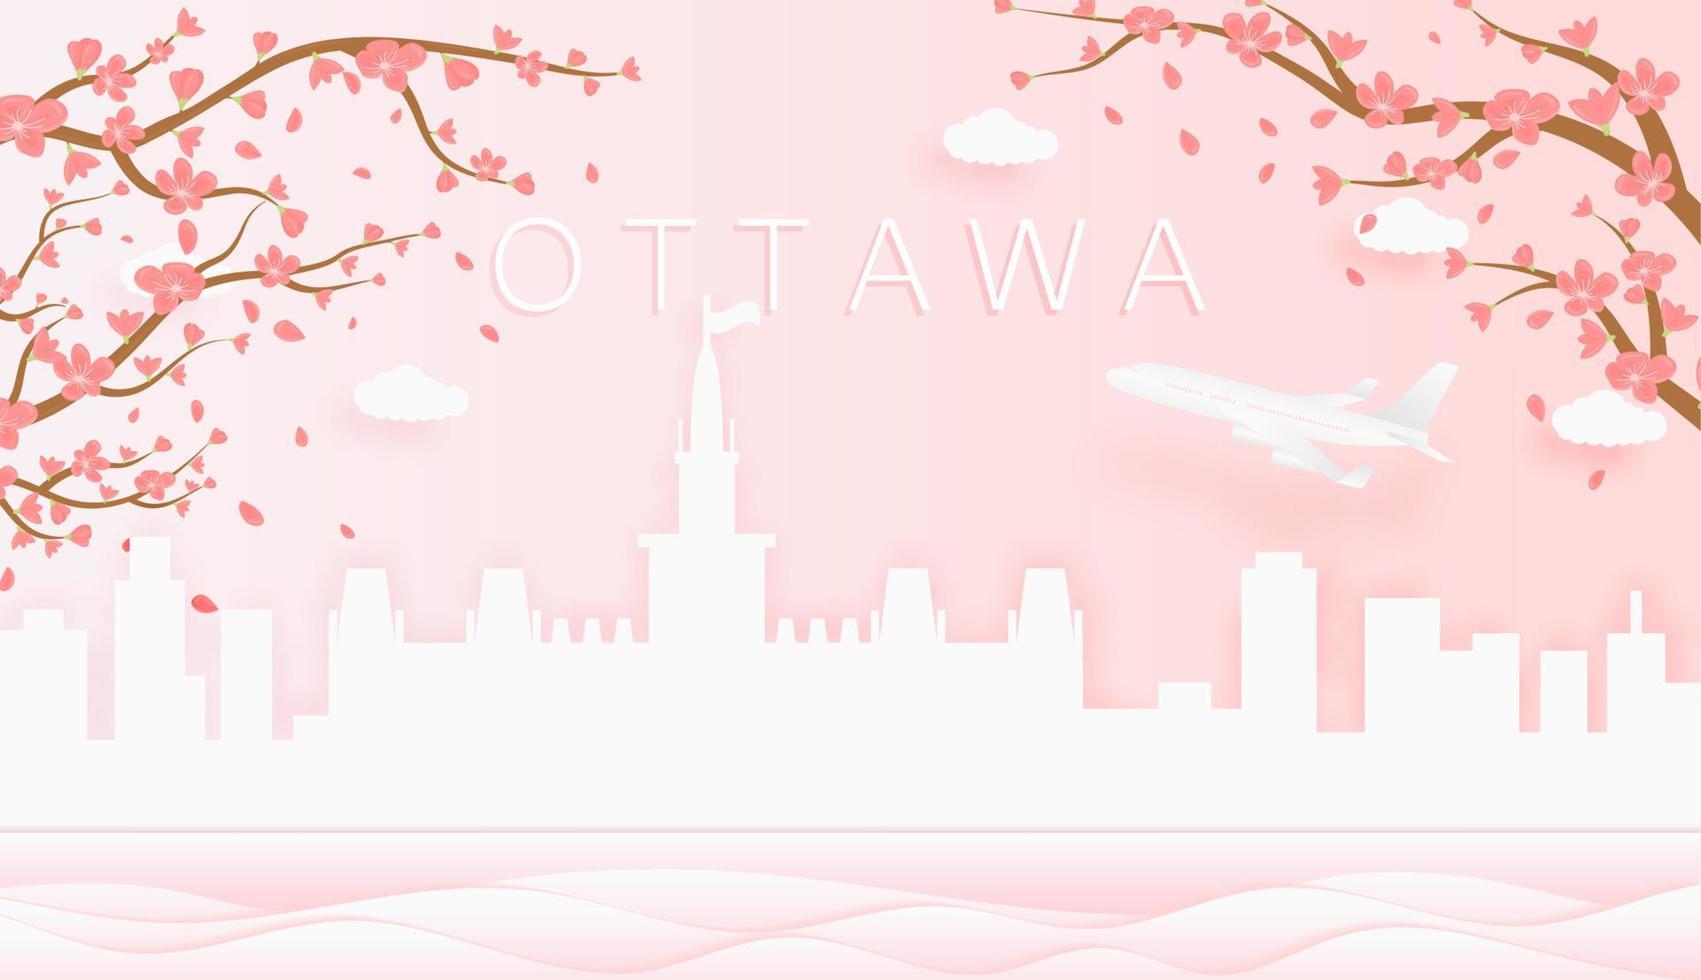 Panorama Reise Postkarte, Poster, Tour Werbung von Welt berühmt Sehenswürdigkeiten von Ottawa, Frühling Jahreszeit mit Blühen Blumen im Baum vektor